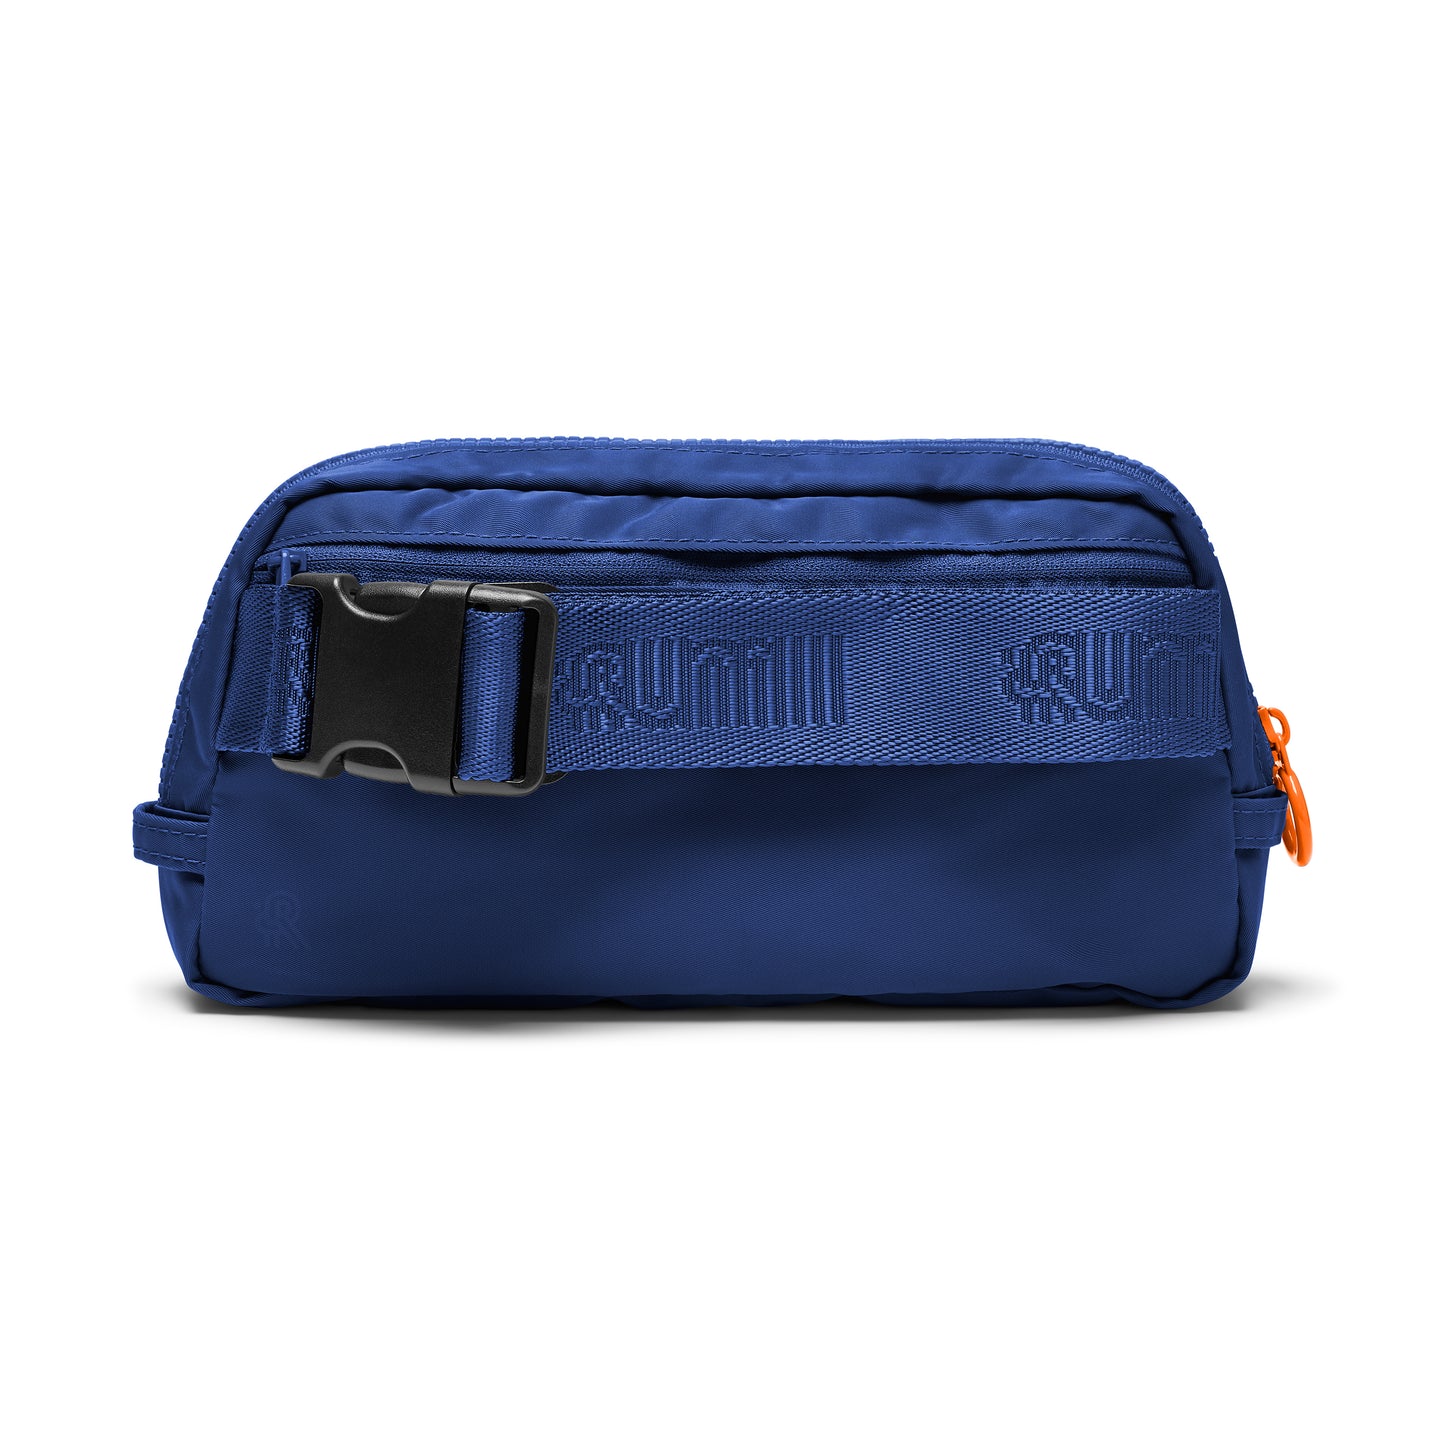 Navy Rumii Essential Bag 